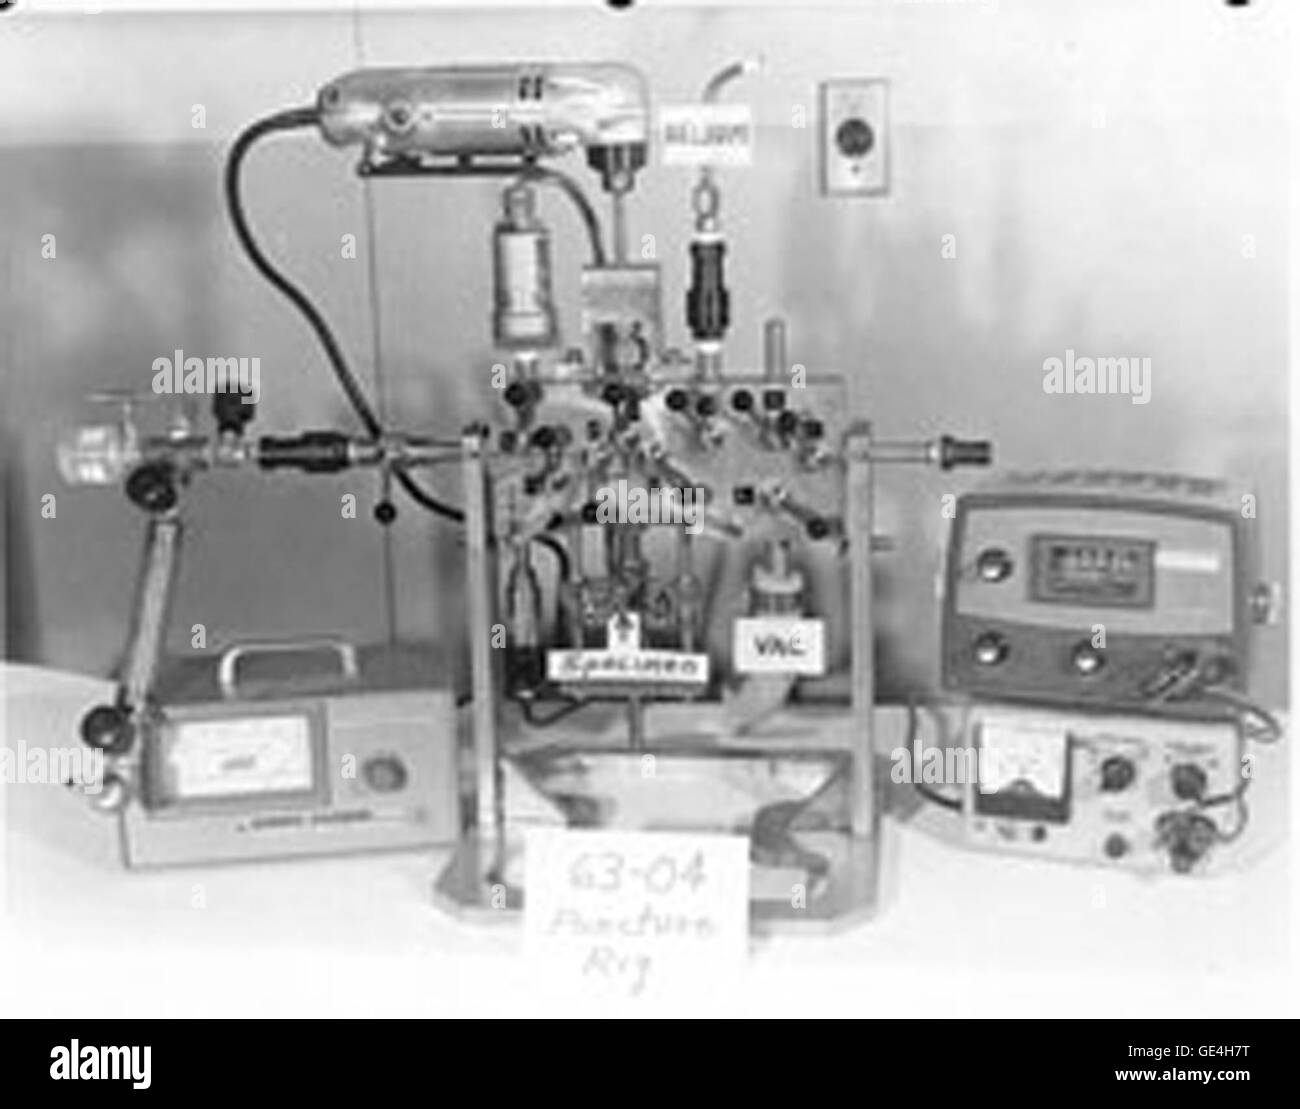 Rig zu durchbohren. Punktion-Rigs wurden verwendet, um die Außenkapsel jedes Experiment zu durchdringen und messen die Druckerhöhung in der Anlage durch freigesetzten Gase während der Bestrahlung. Kunststoff Flasche auf der linken Seite wurde verwendet, um das Isotop Inhalt der Kernspaltung Produkt Gase, Xenon und Krypton, mit Gamma Ray-Spektrometrie bestimmen; Die röhrenförmigen Probenbehälter unten, den es verwendet wurde, um die Volumenprozent der beiden Gase zu messen. Die gesamte Punktion Betrieb und Sammlung von Gasproben erfolgte in den heißen Zellen mithilfe der Fernbedienungen Manipulatoren. Die Probenbehälter wurden dann von der Punktion entfernt ri Stockfoto